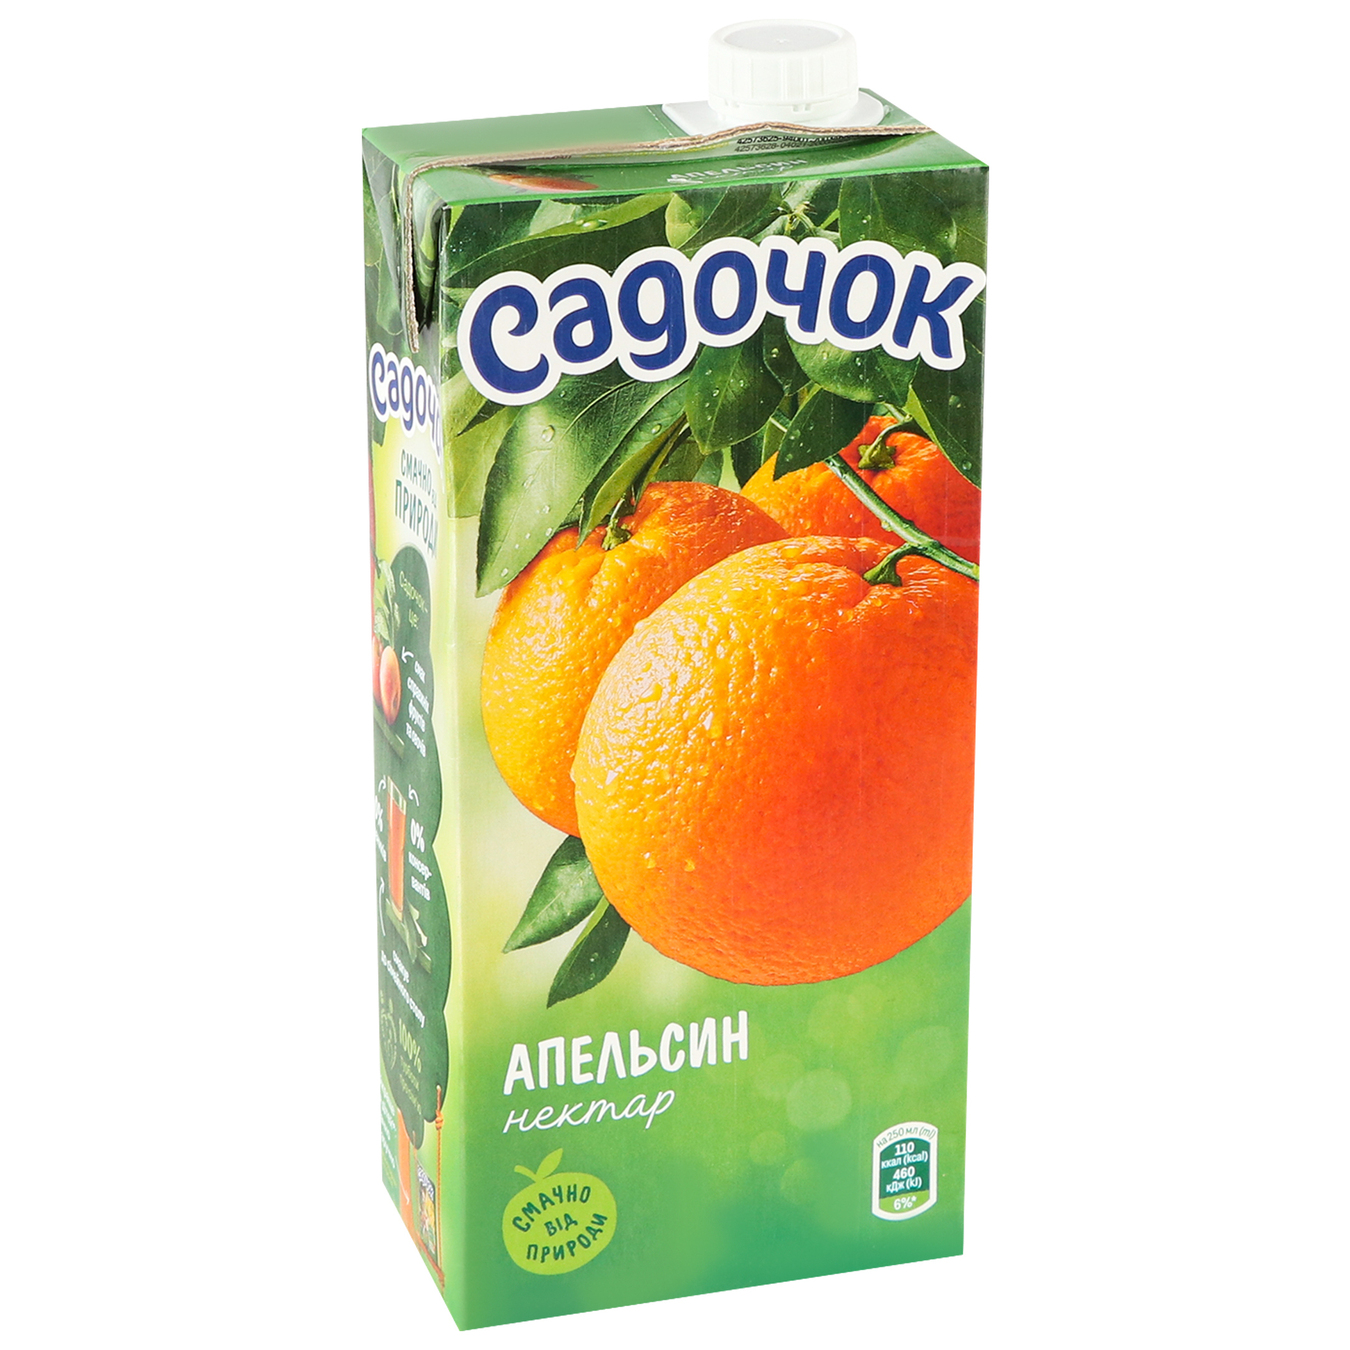 Nectar Sadochok Orange 0.95 l 3